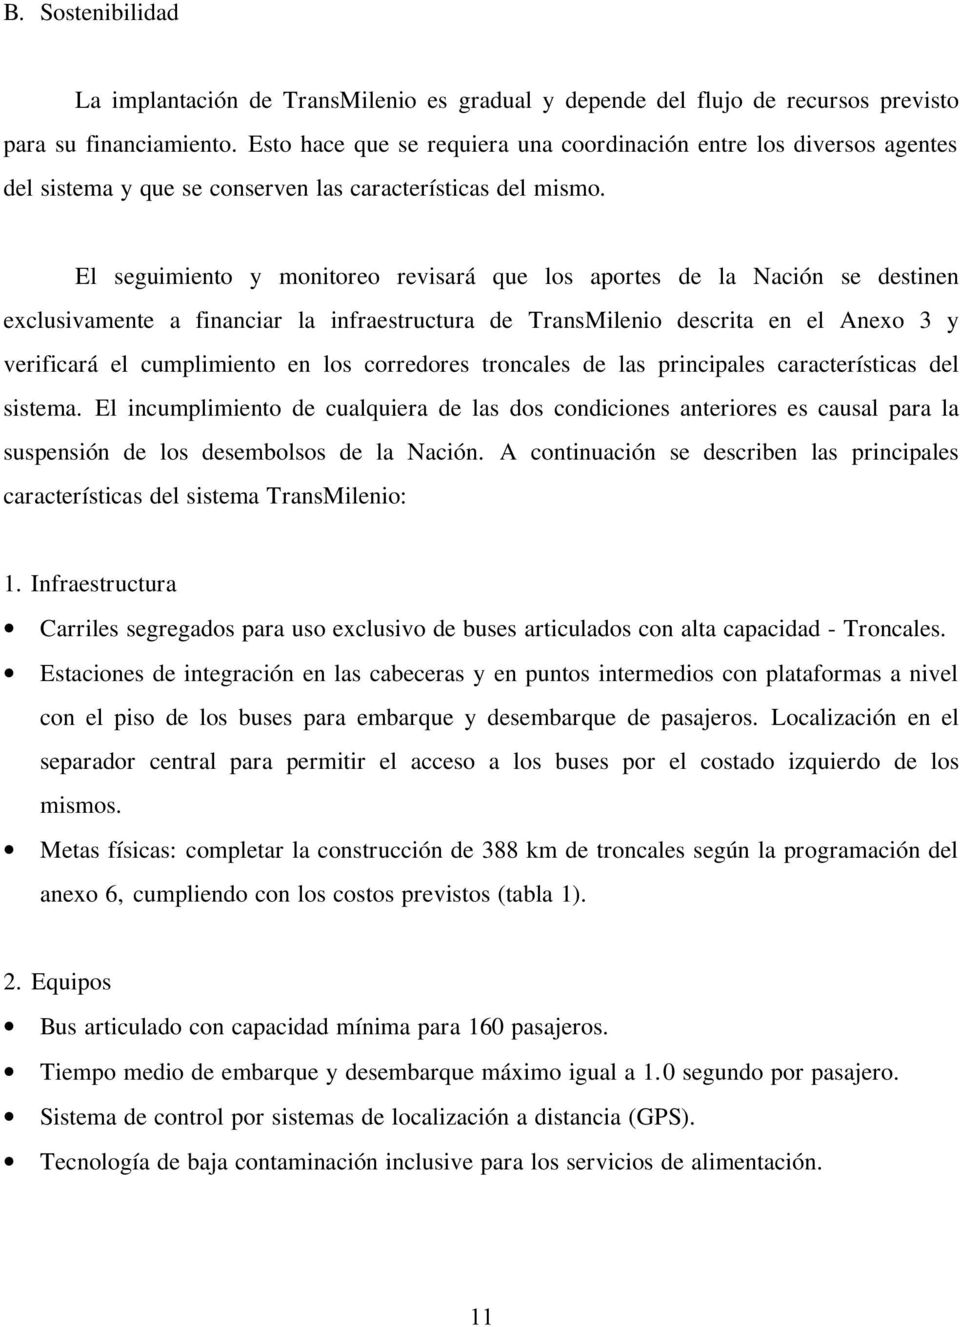 El seguimiento y monitoreo revisará que los aportes de la Nación se destinen exclusivamente a financiar la infraestructura de TransMilenio descrita en el Anexo 3 y verificará el cumplimiento en los